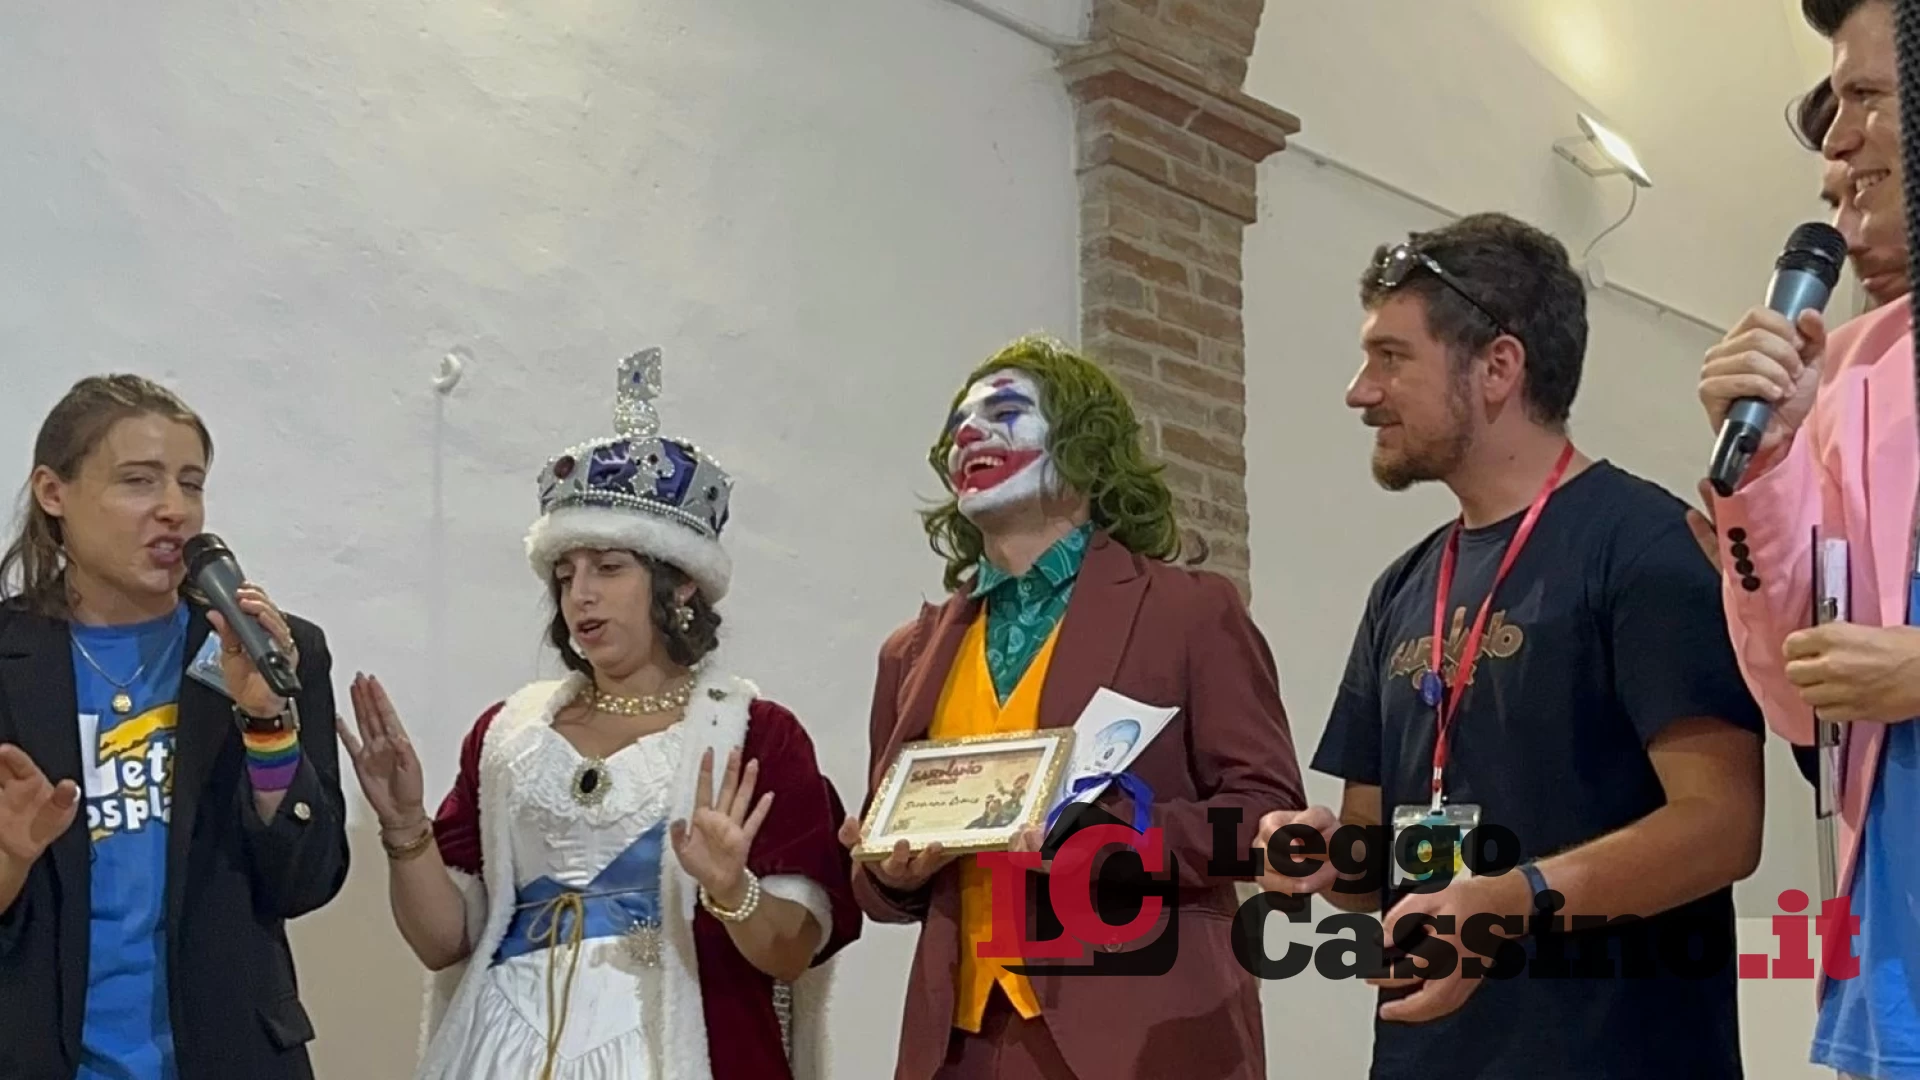 Vincenzo Di Vaio, trionfa in provincia di Macerata vincendo il premio “Sarnano Comics”.